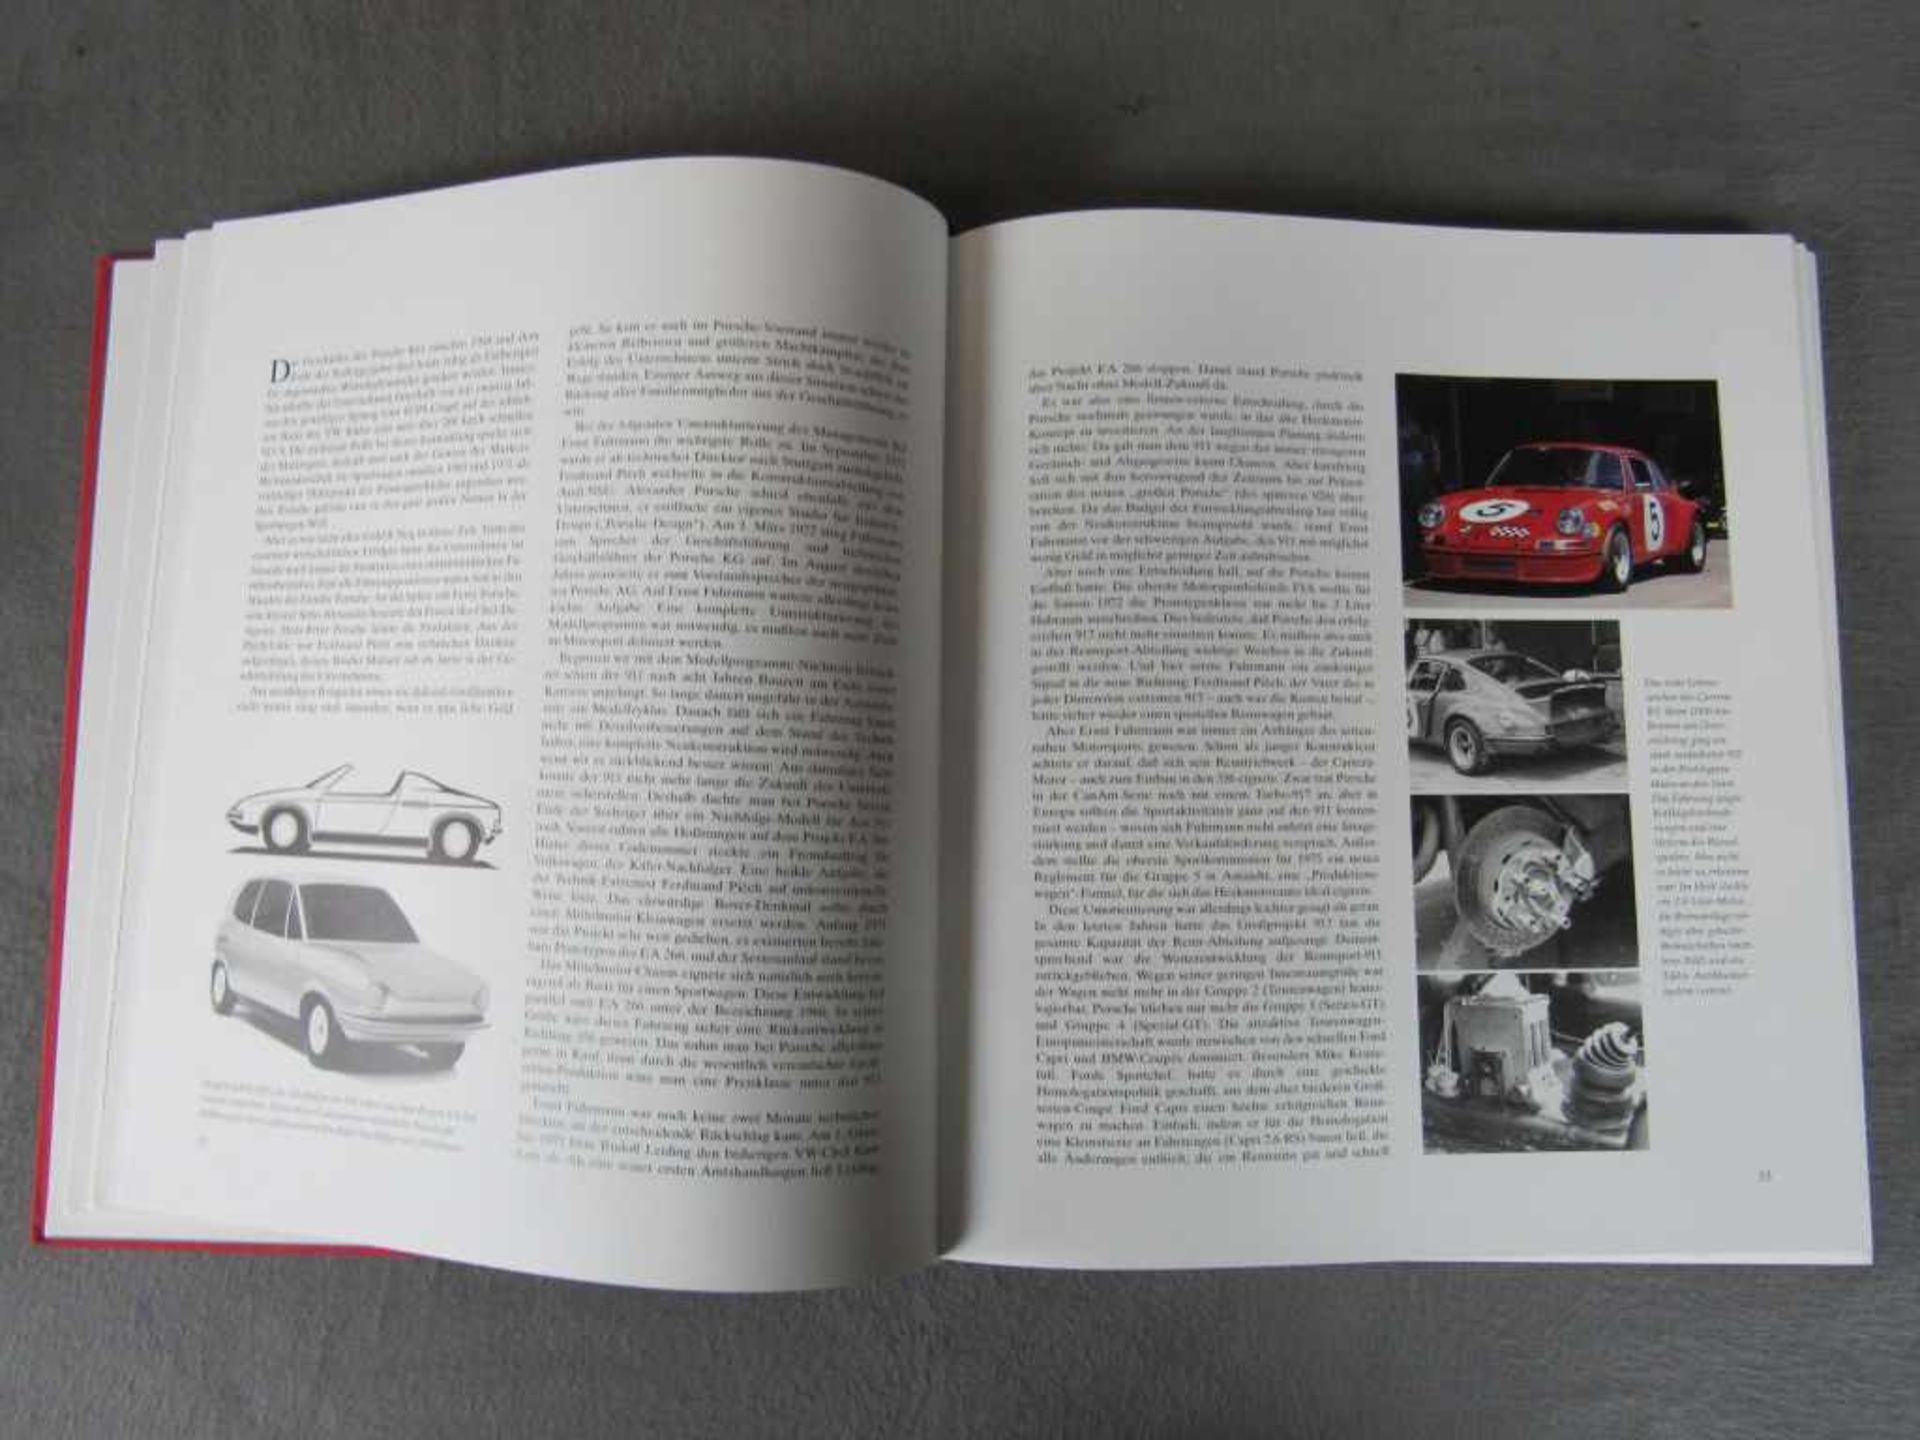 Sehr seltenes Porsche Carrera RS Buch limitierte Auflage nummeriert Dr. Thomas Gruber und Dr. Georg, - Image 4 of 8